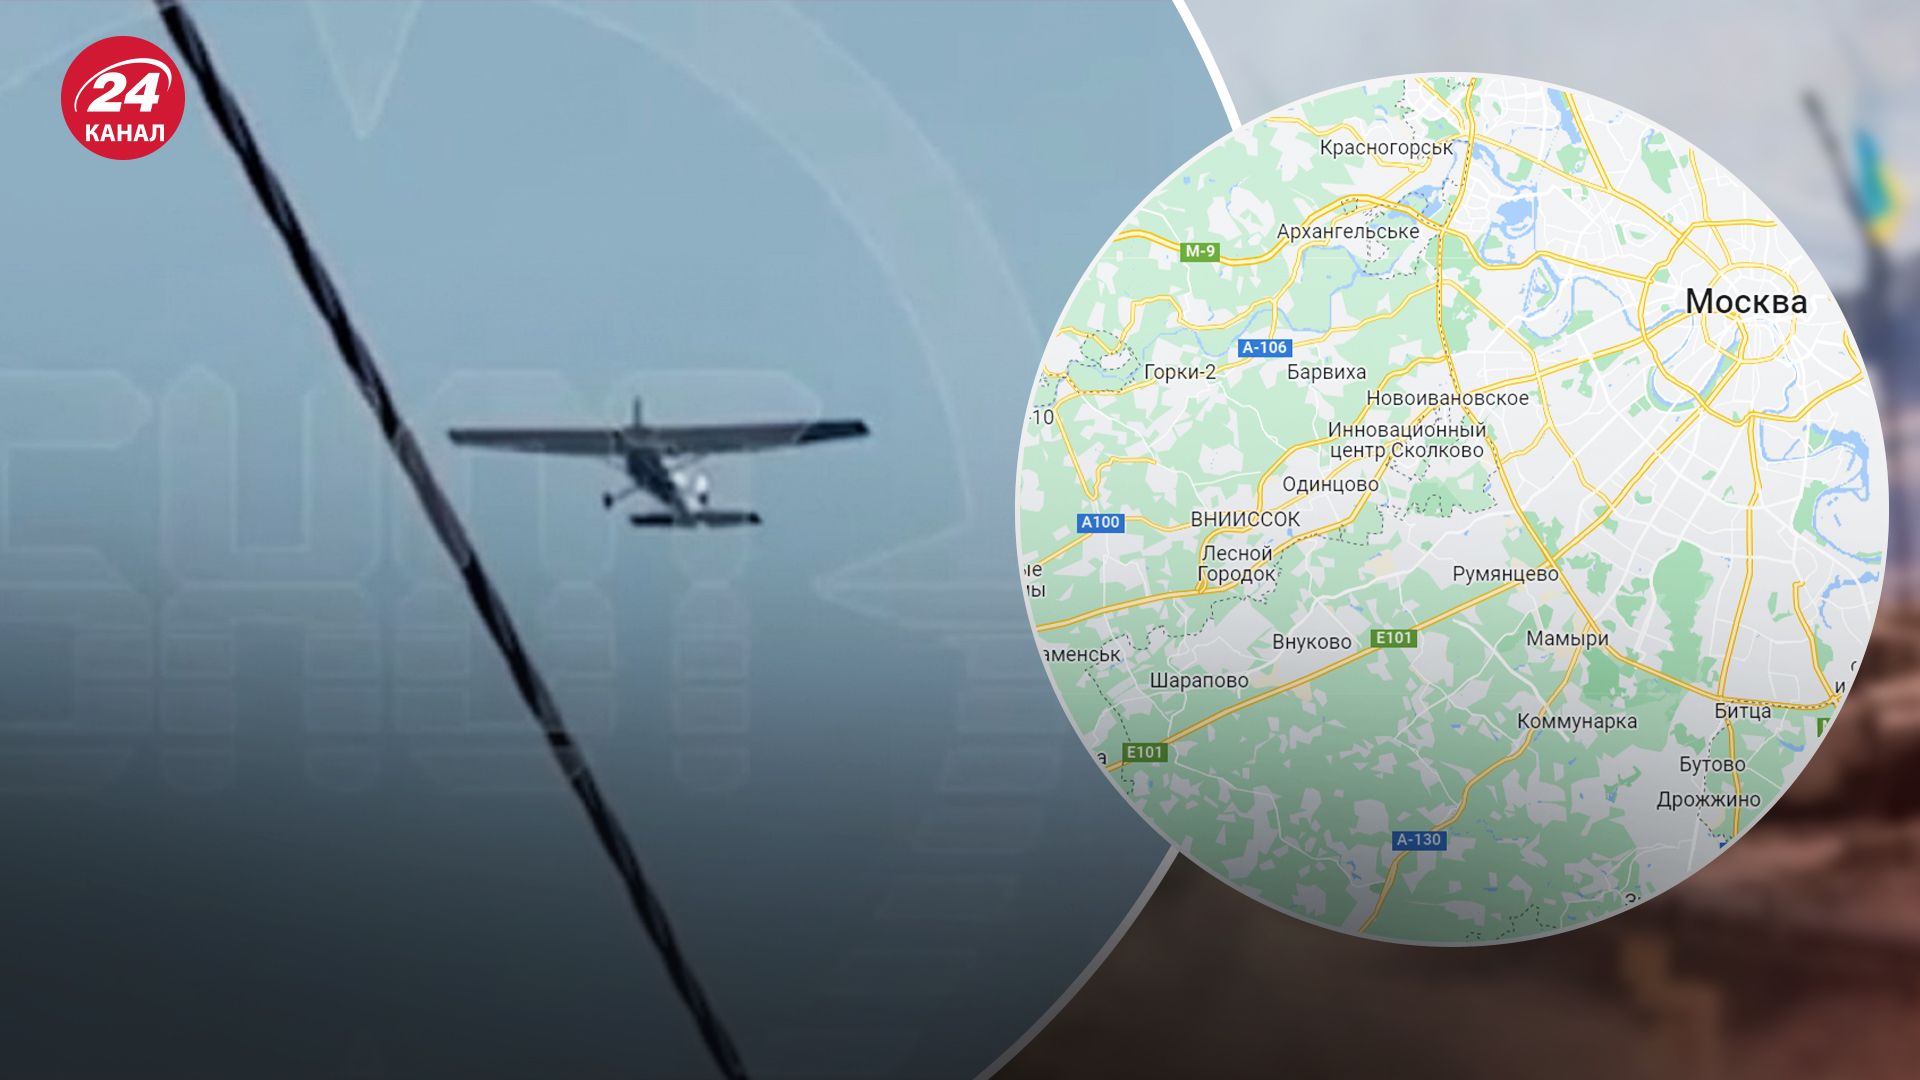 Резиденция Путина и дома элиты: показываем на карте, куда прилетели дроны в Москве - 24 Канал